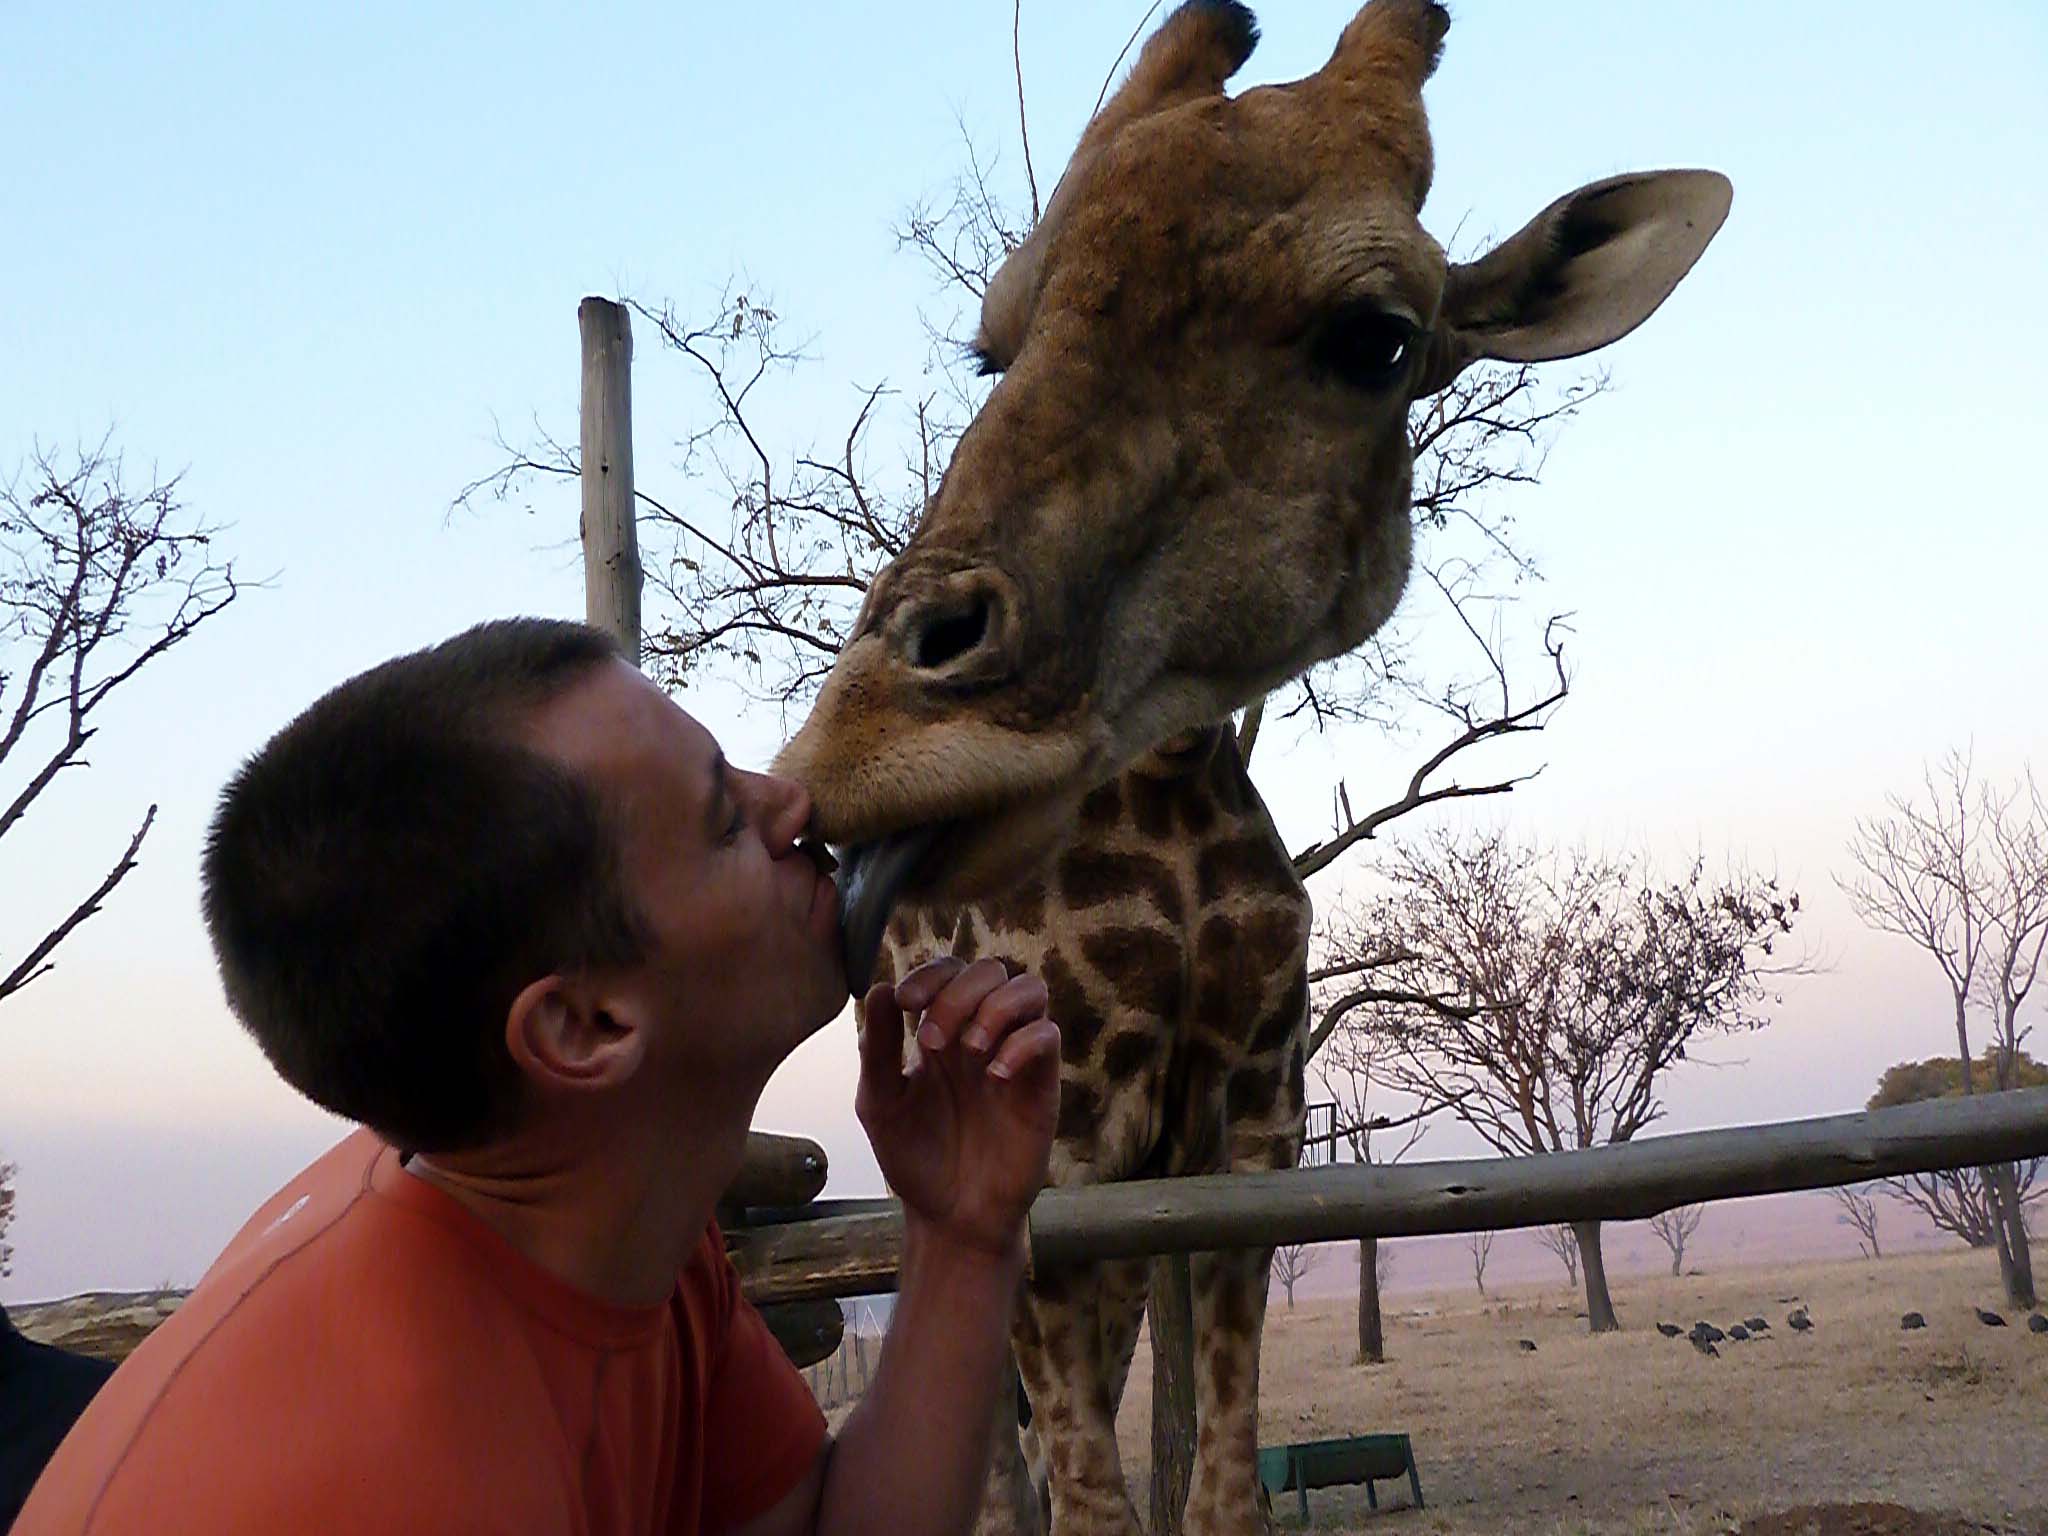 South Africa - Giraffe Photo Op